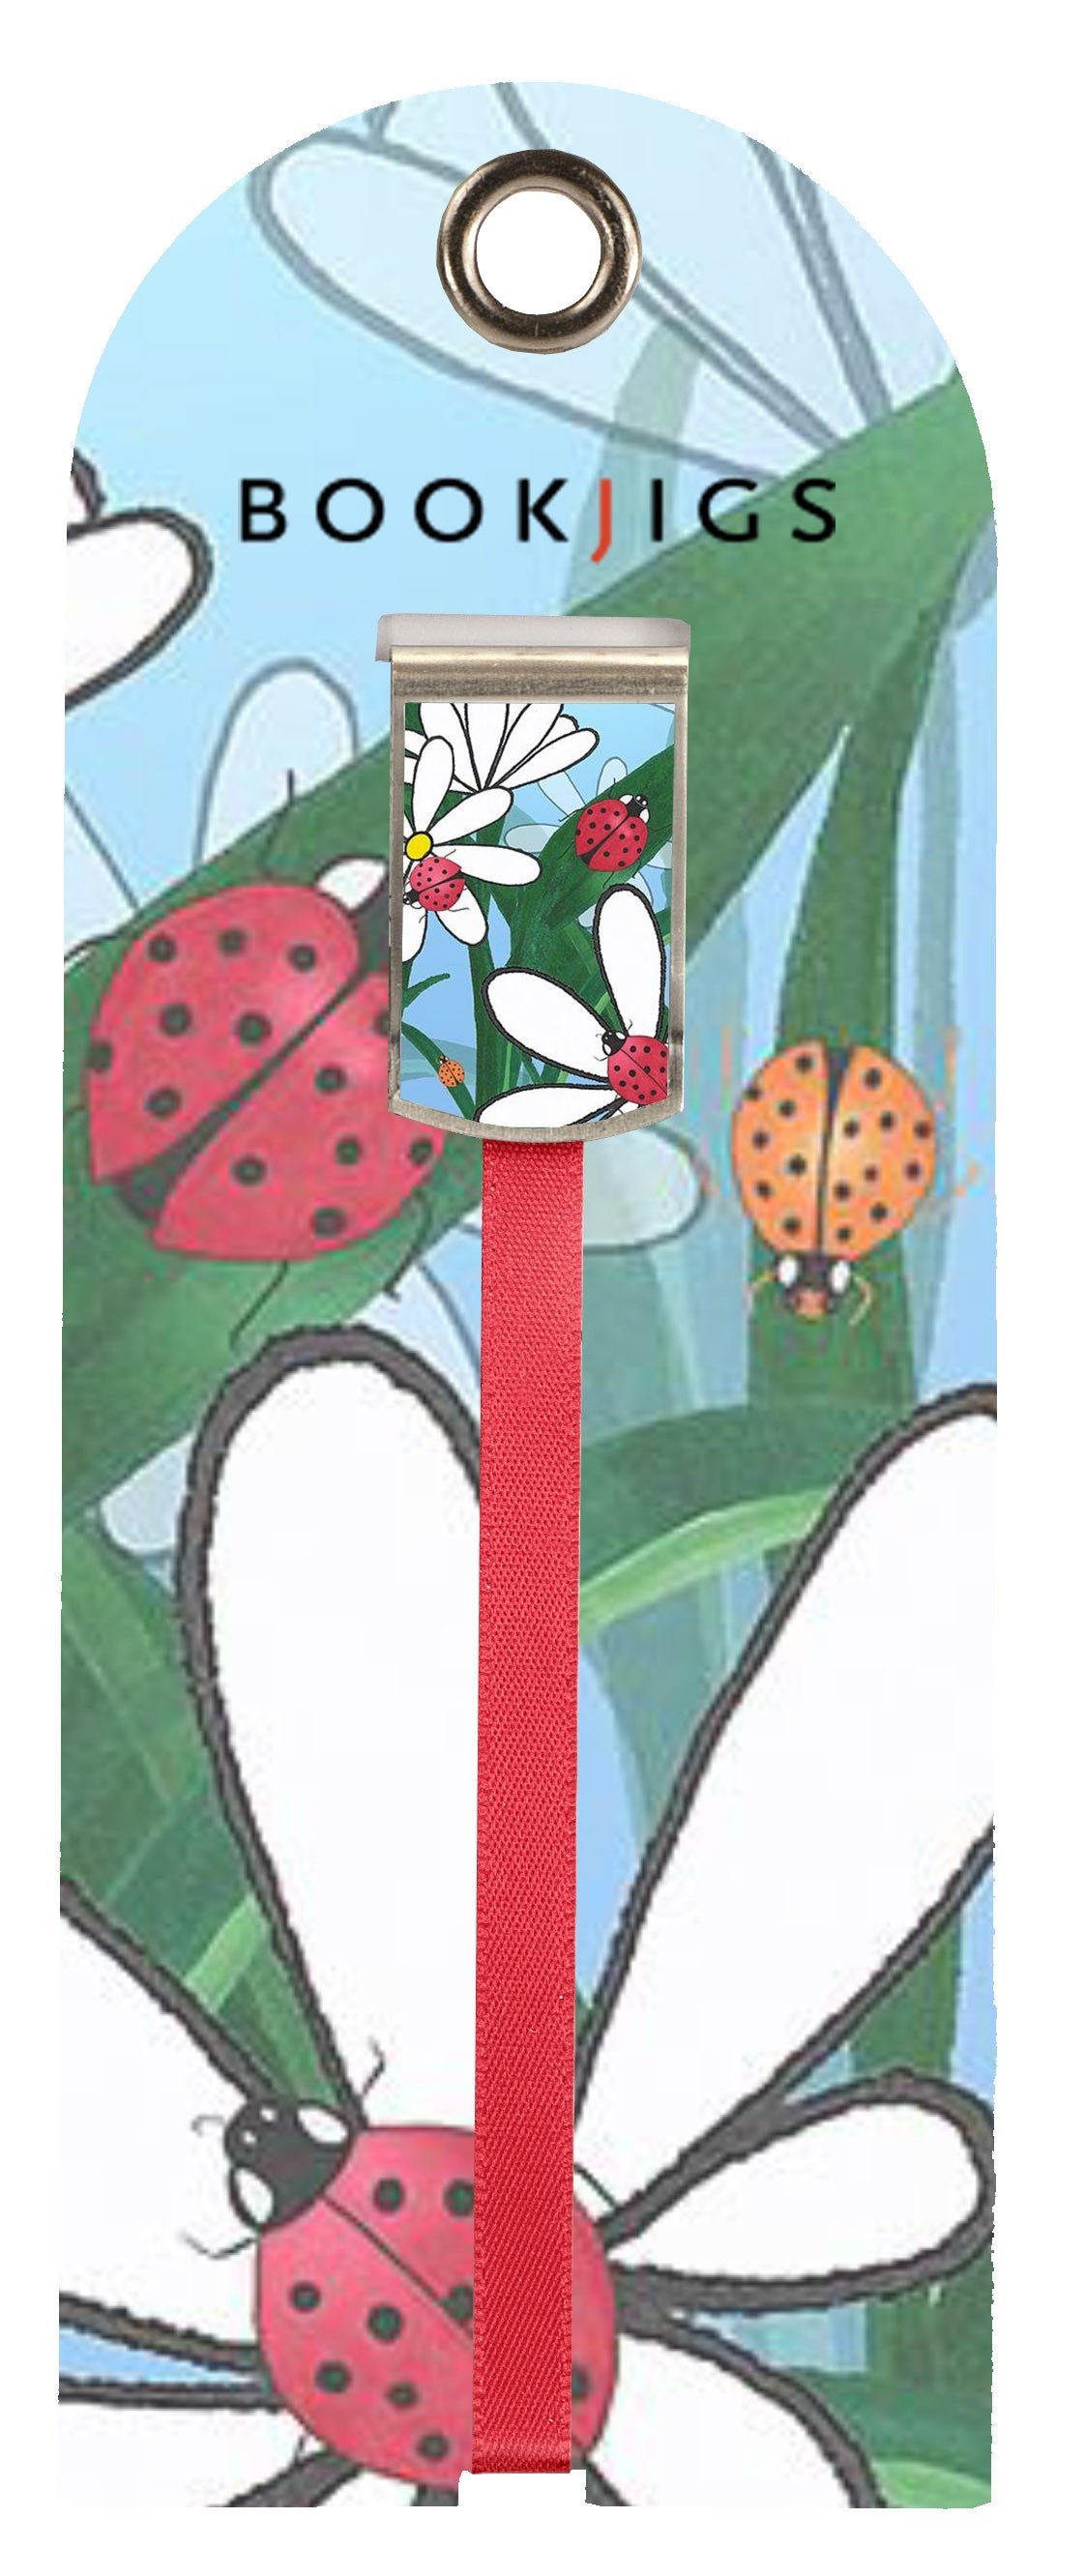 Daisy Ladybug - Bookjig by White Ladybug Inc. Bookmark Gift book reader